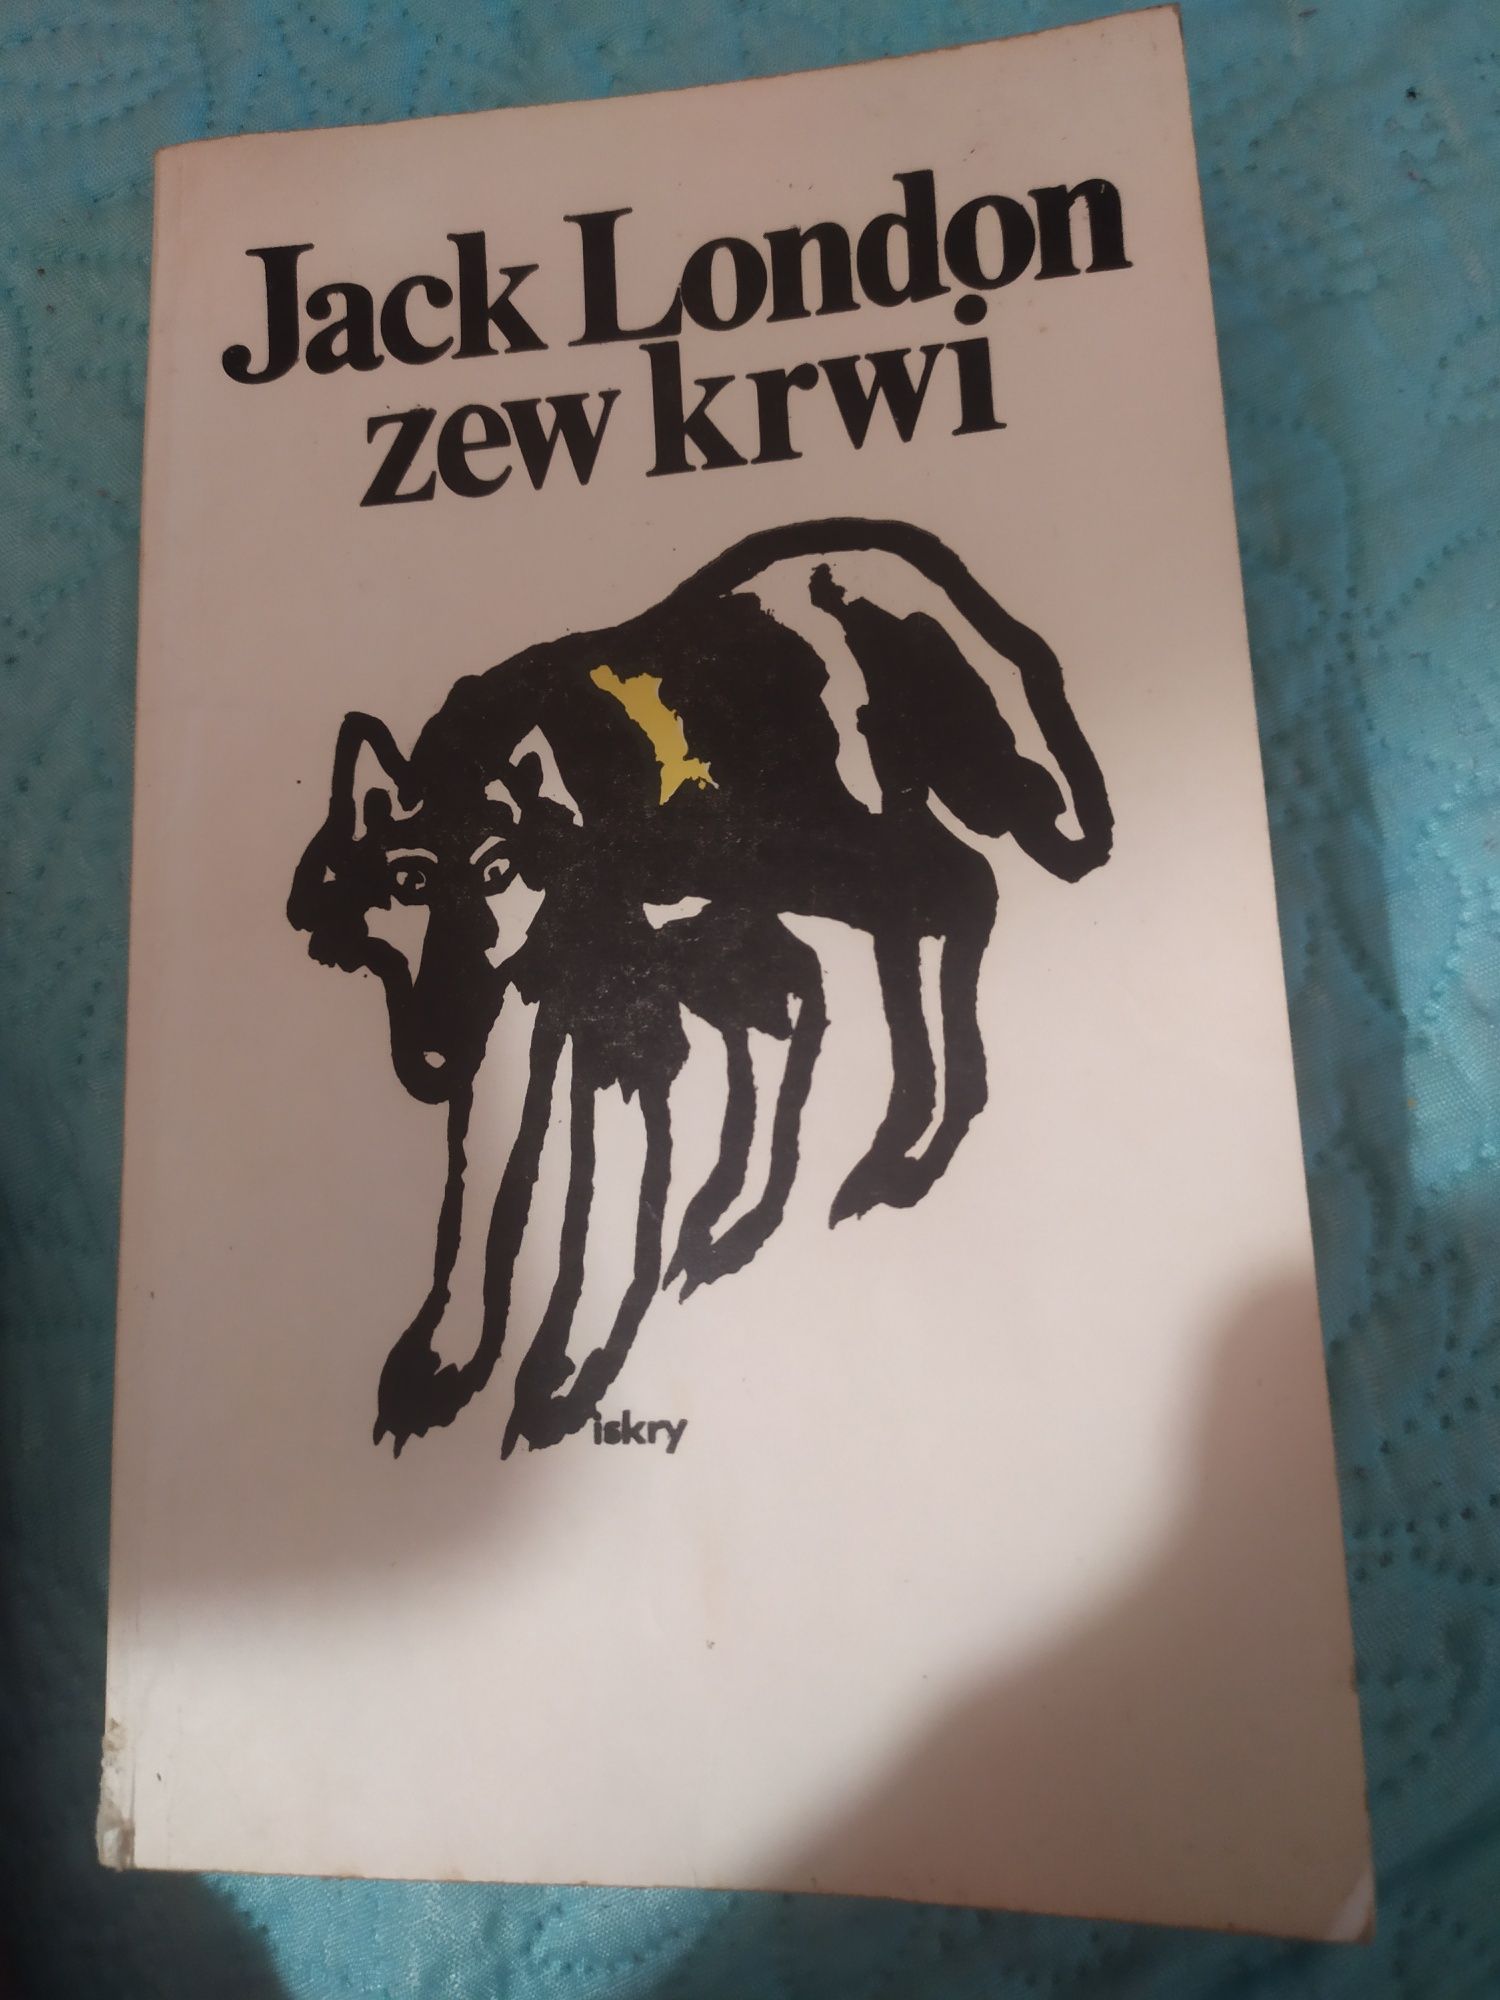 Джек Лондон Jack London "Zew krwi"